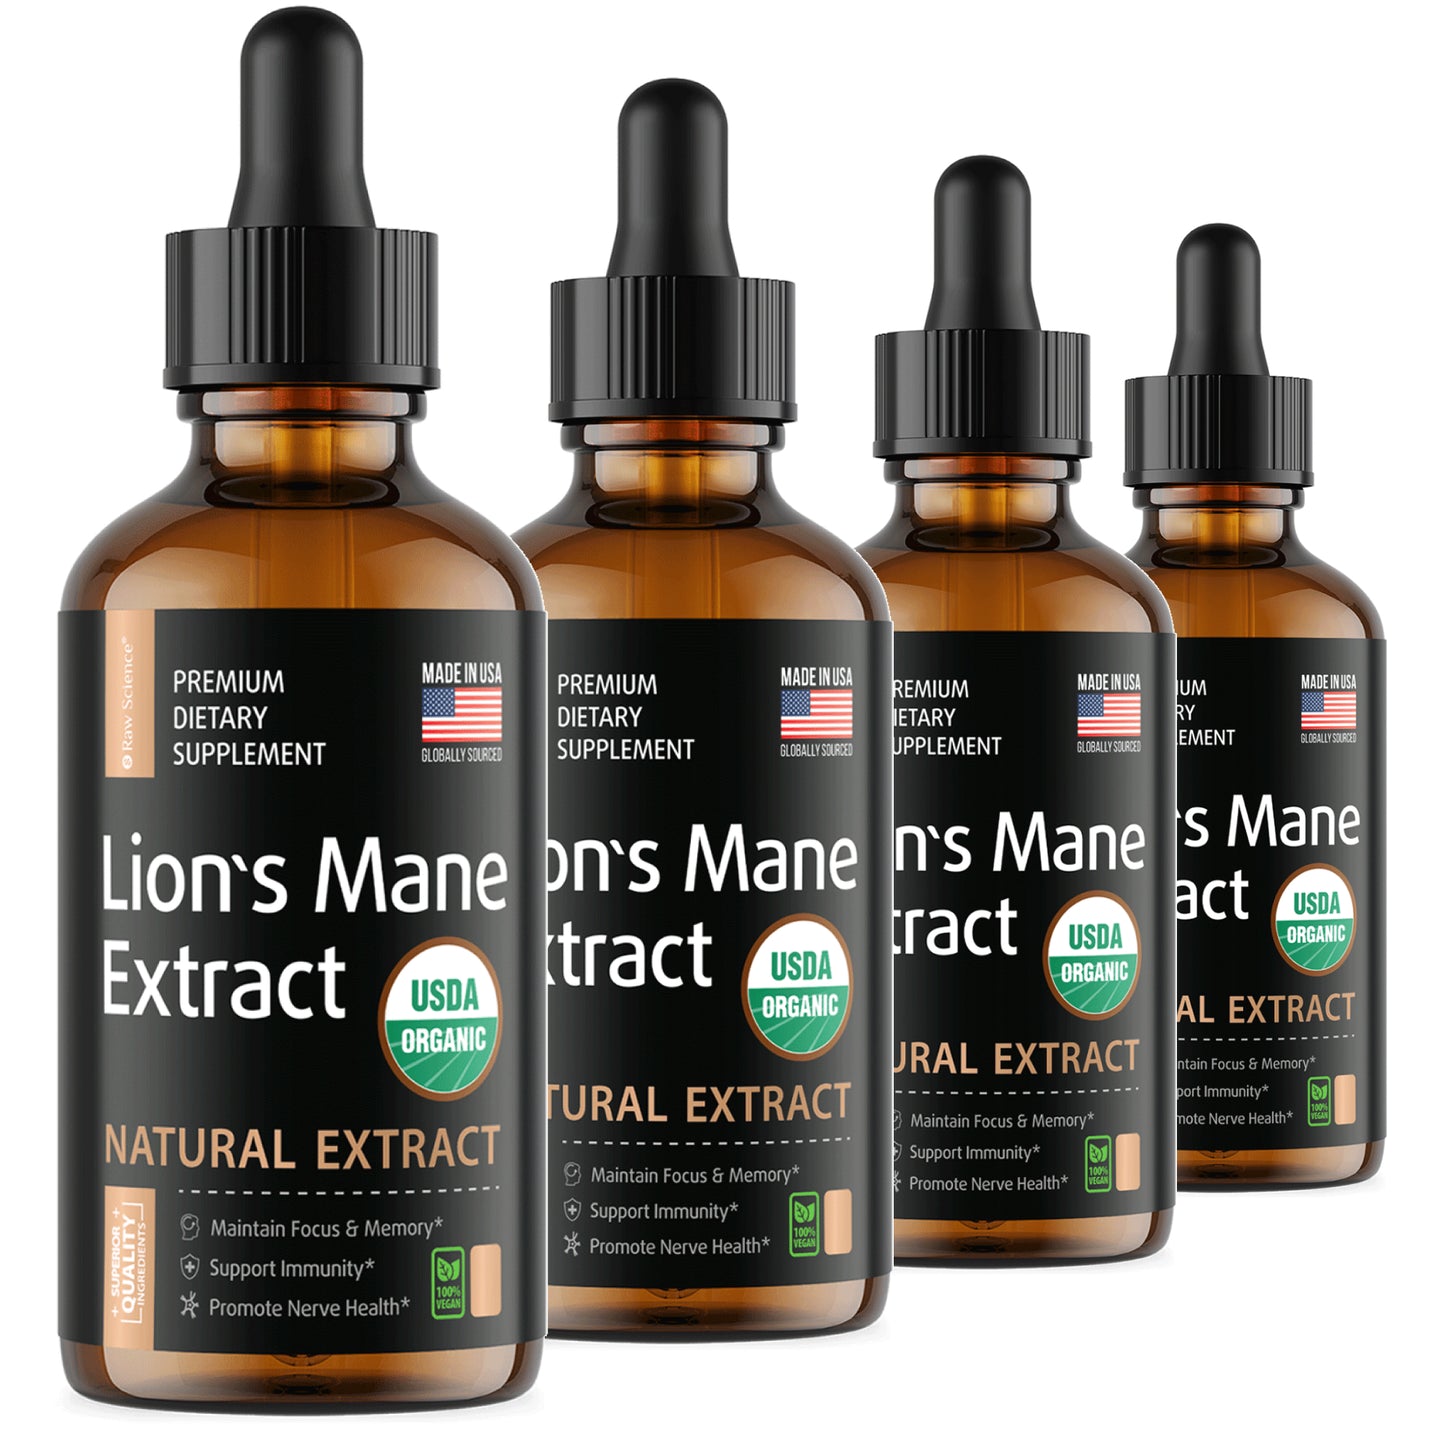 Lion's Mane Liquid Extract Buy 3 Get 1 Free